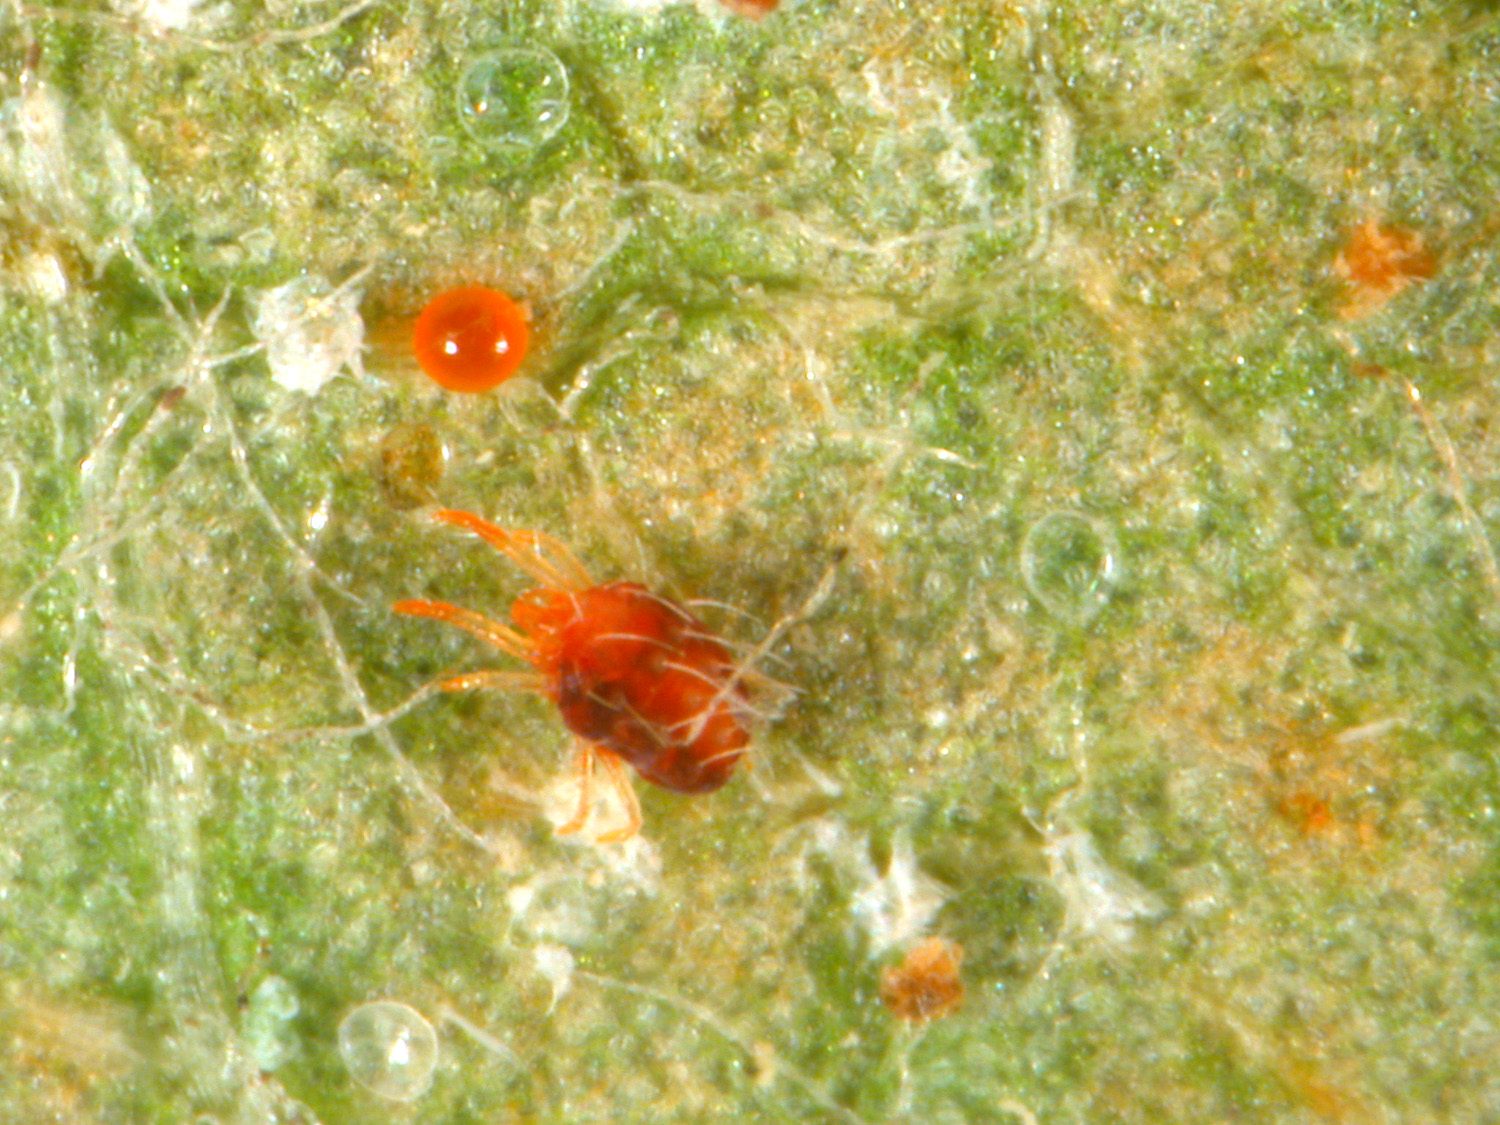 Figure 1. European red mite adult and egg on leaf surface. (<em>Photo credit: John Obermeyer, Purdue Entomology</em>)